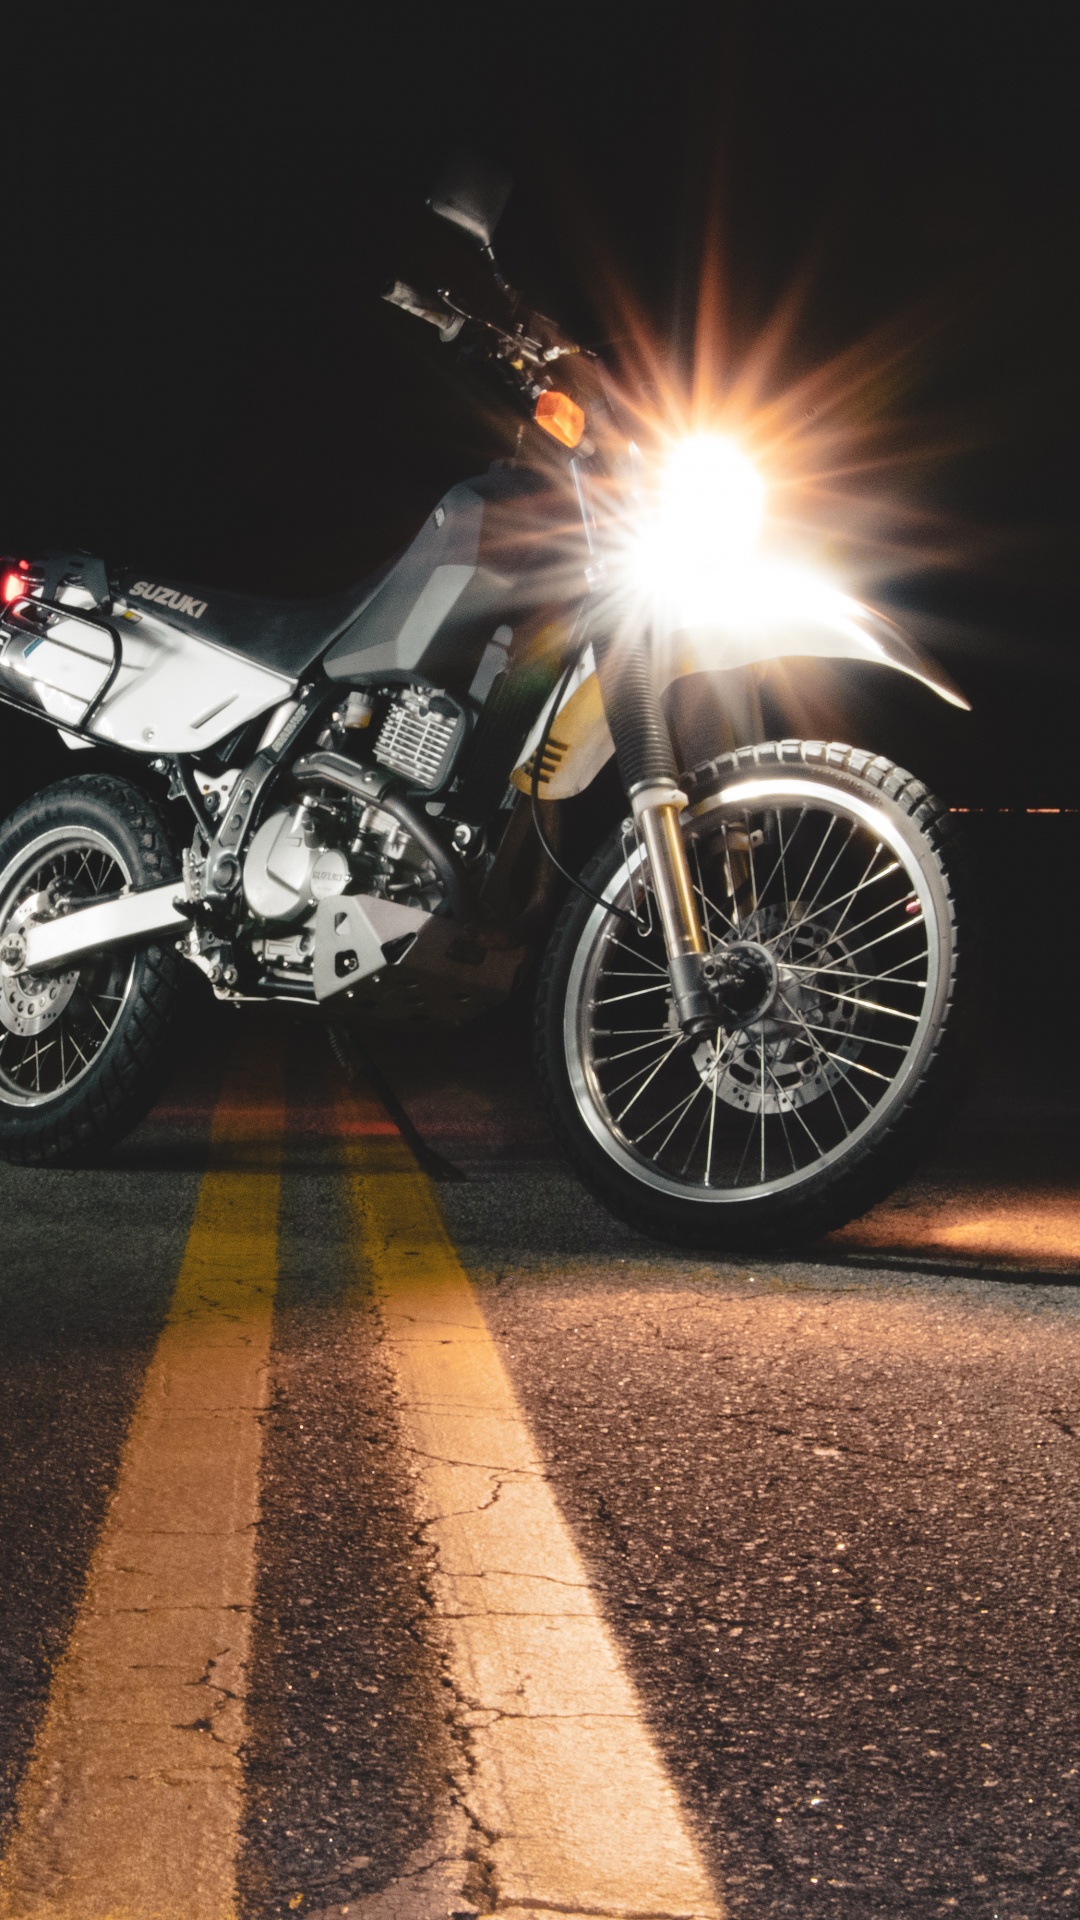 Motocicleta Negra y Plateada en la Carretera Durante la Noche. Wallpaper in 1080x1920 Resolution